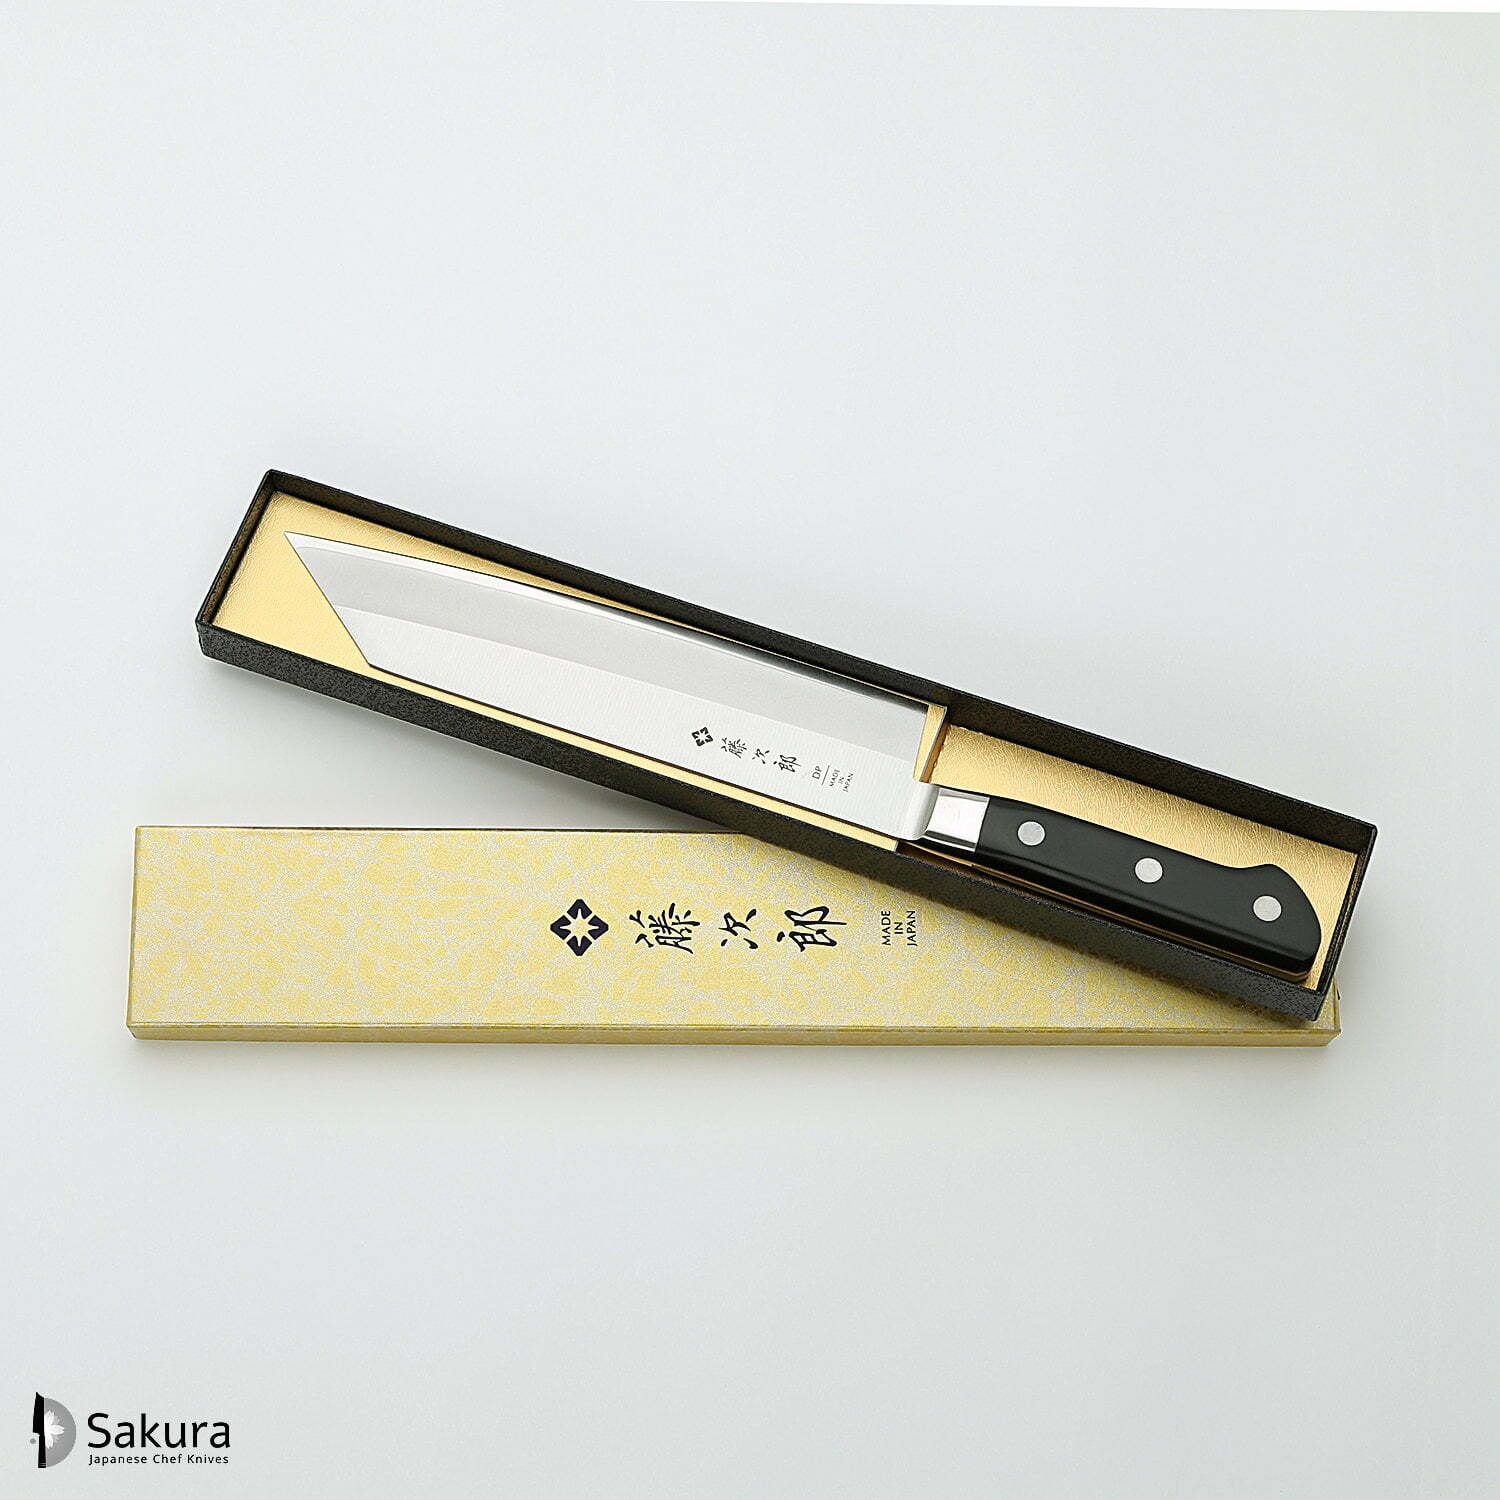 סכין שף רב-תכליתית קִּירִיצוּקֶה 210מ״מ מחוזקת 3 שכבות: פלדת פחמן יפנית VG-10 עטופה פלדת אל-חלד גימור מט מלוטש טוג׳ירו יפן